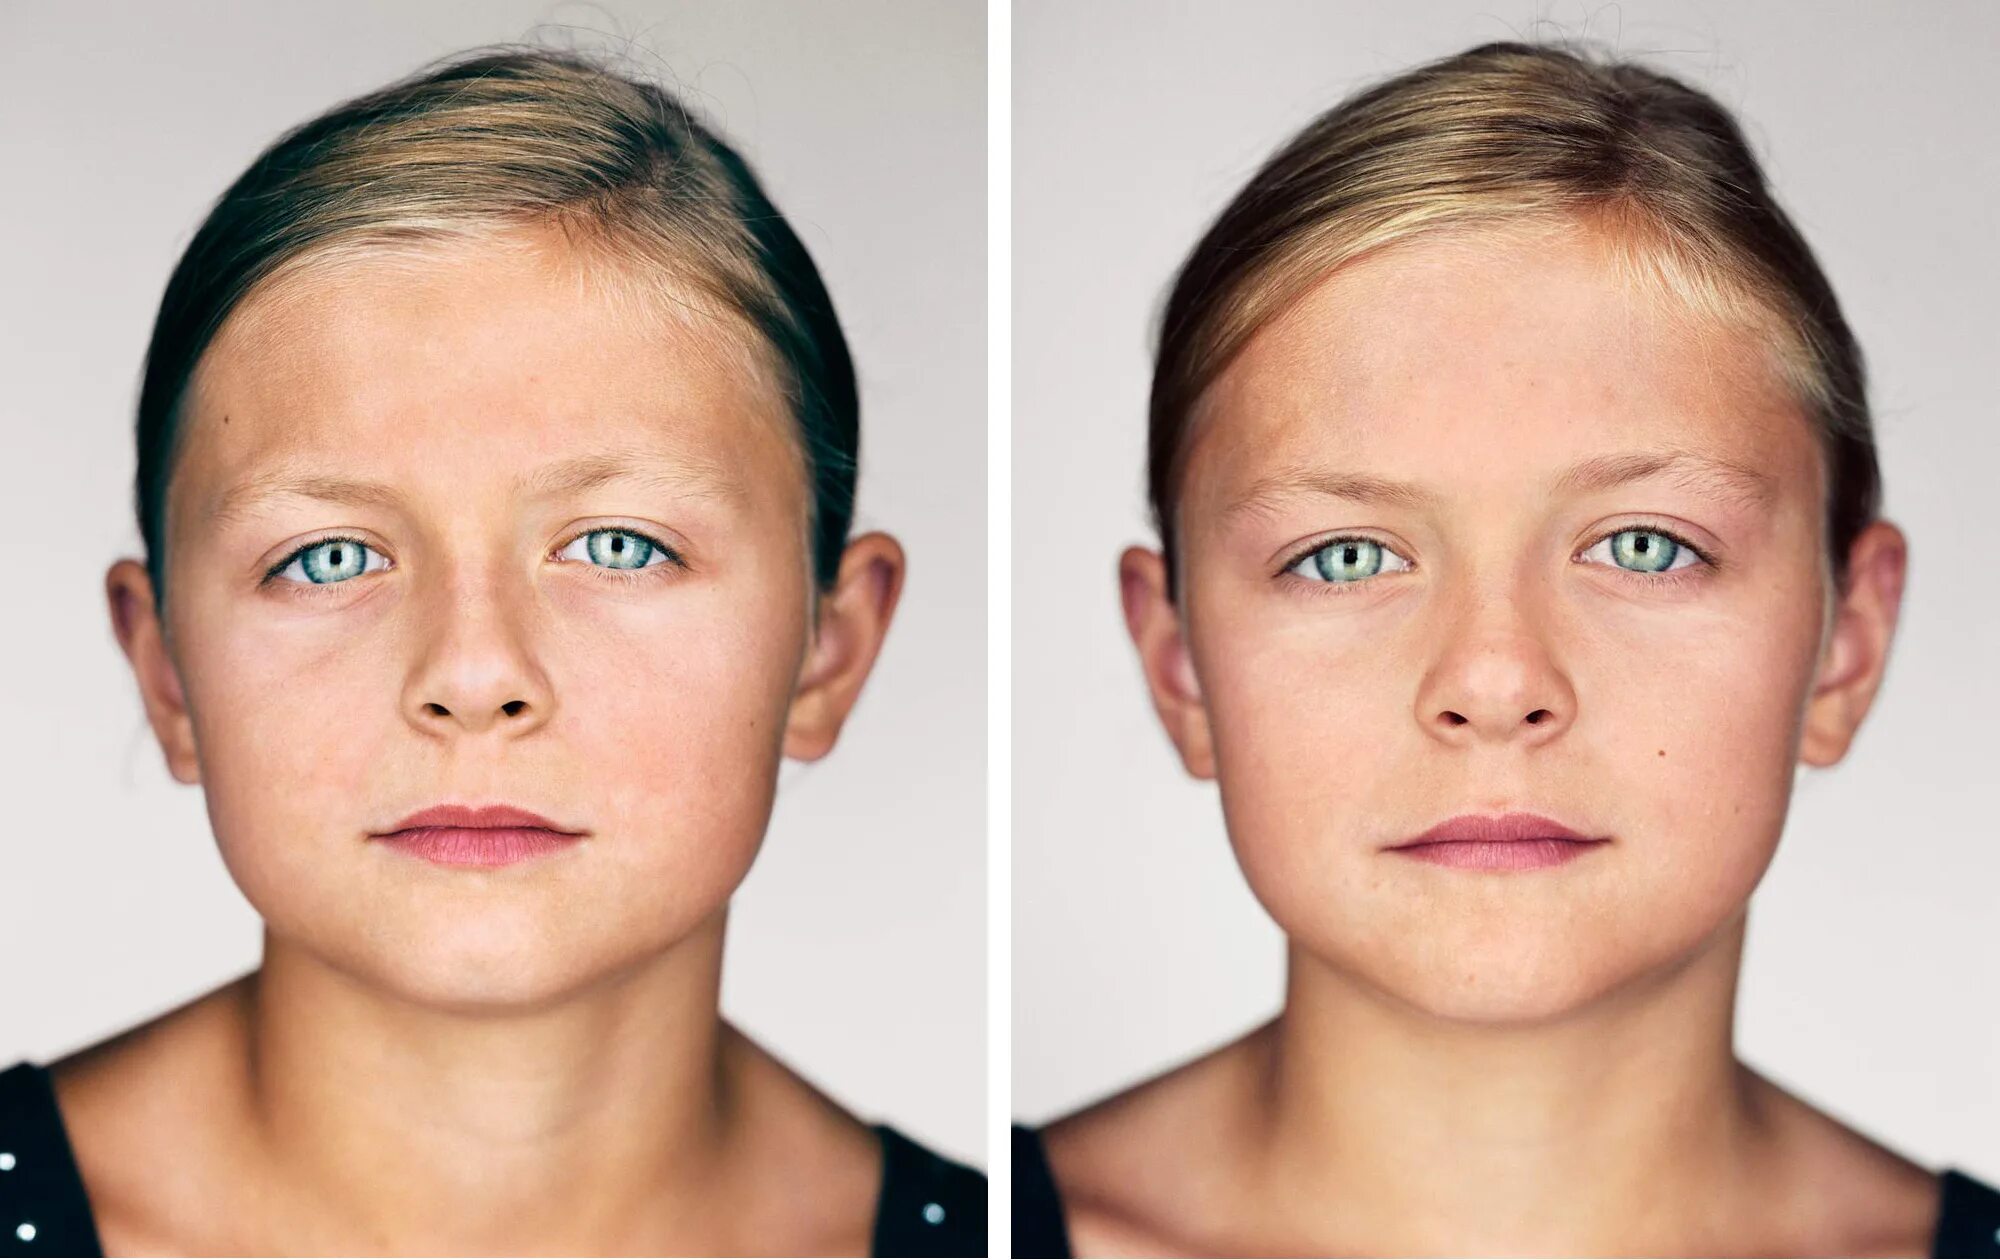 Детское лицо у взрослого. Два разных лица. Асимметрия лица. Не доразвитые лерты лица.